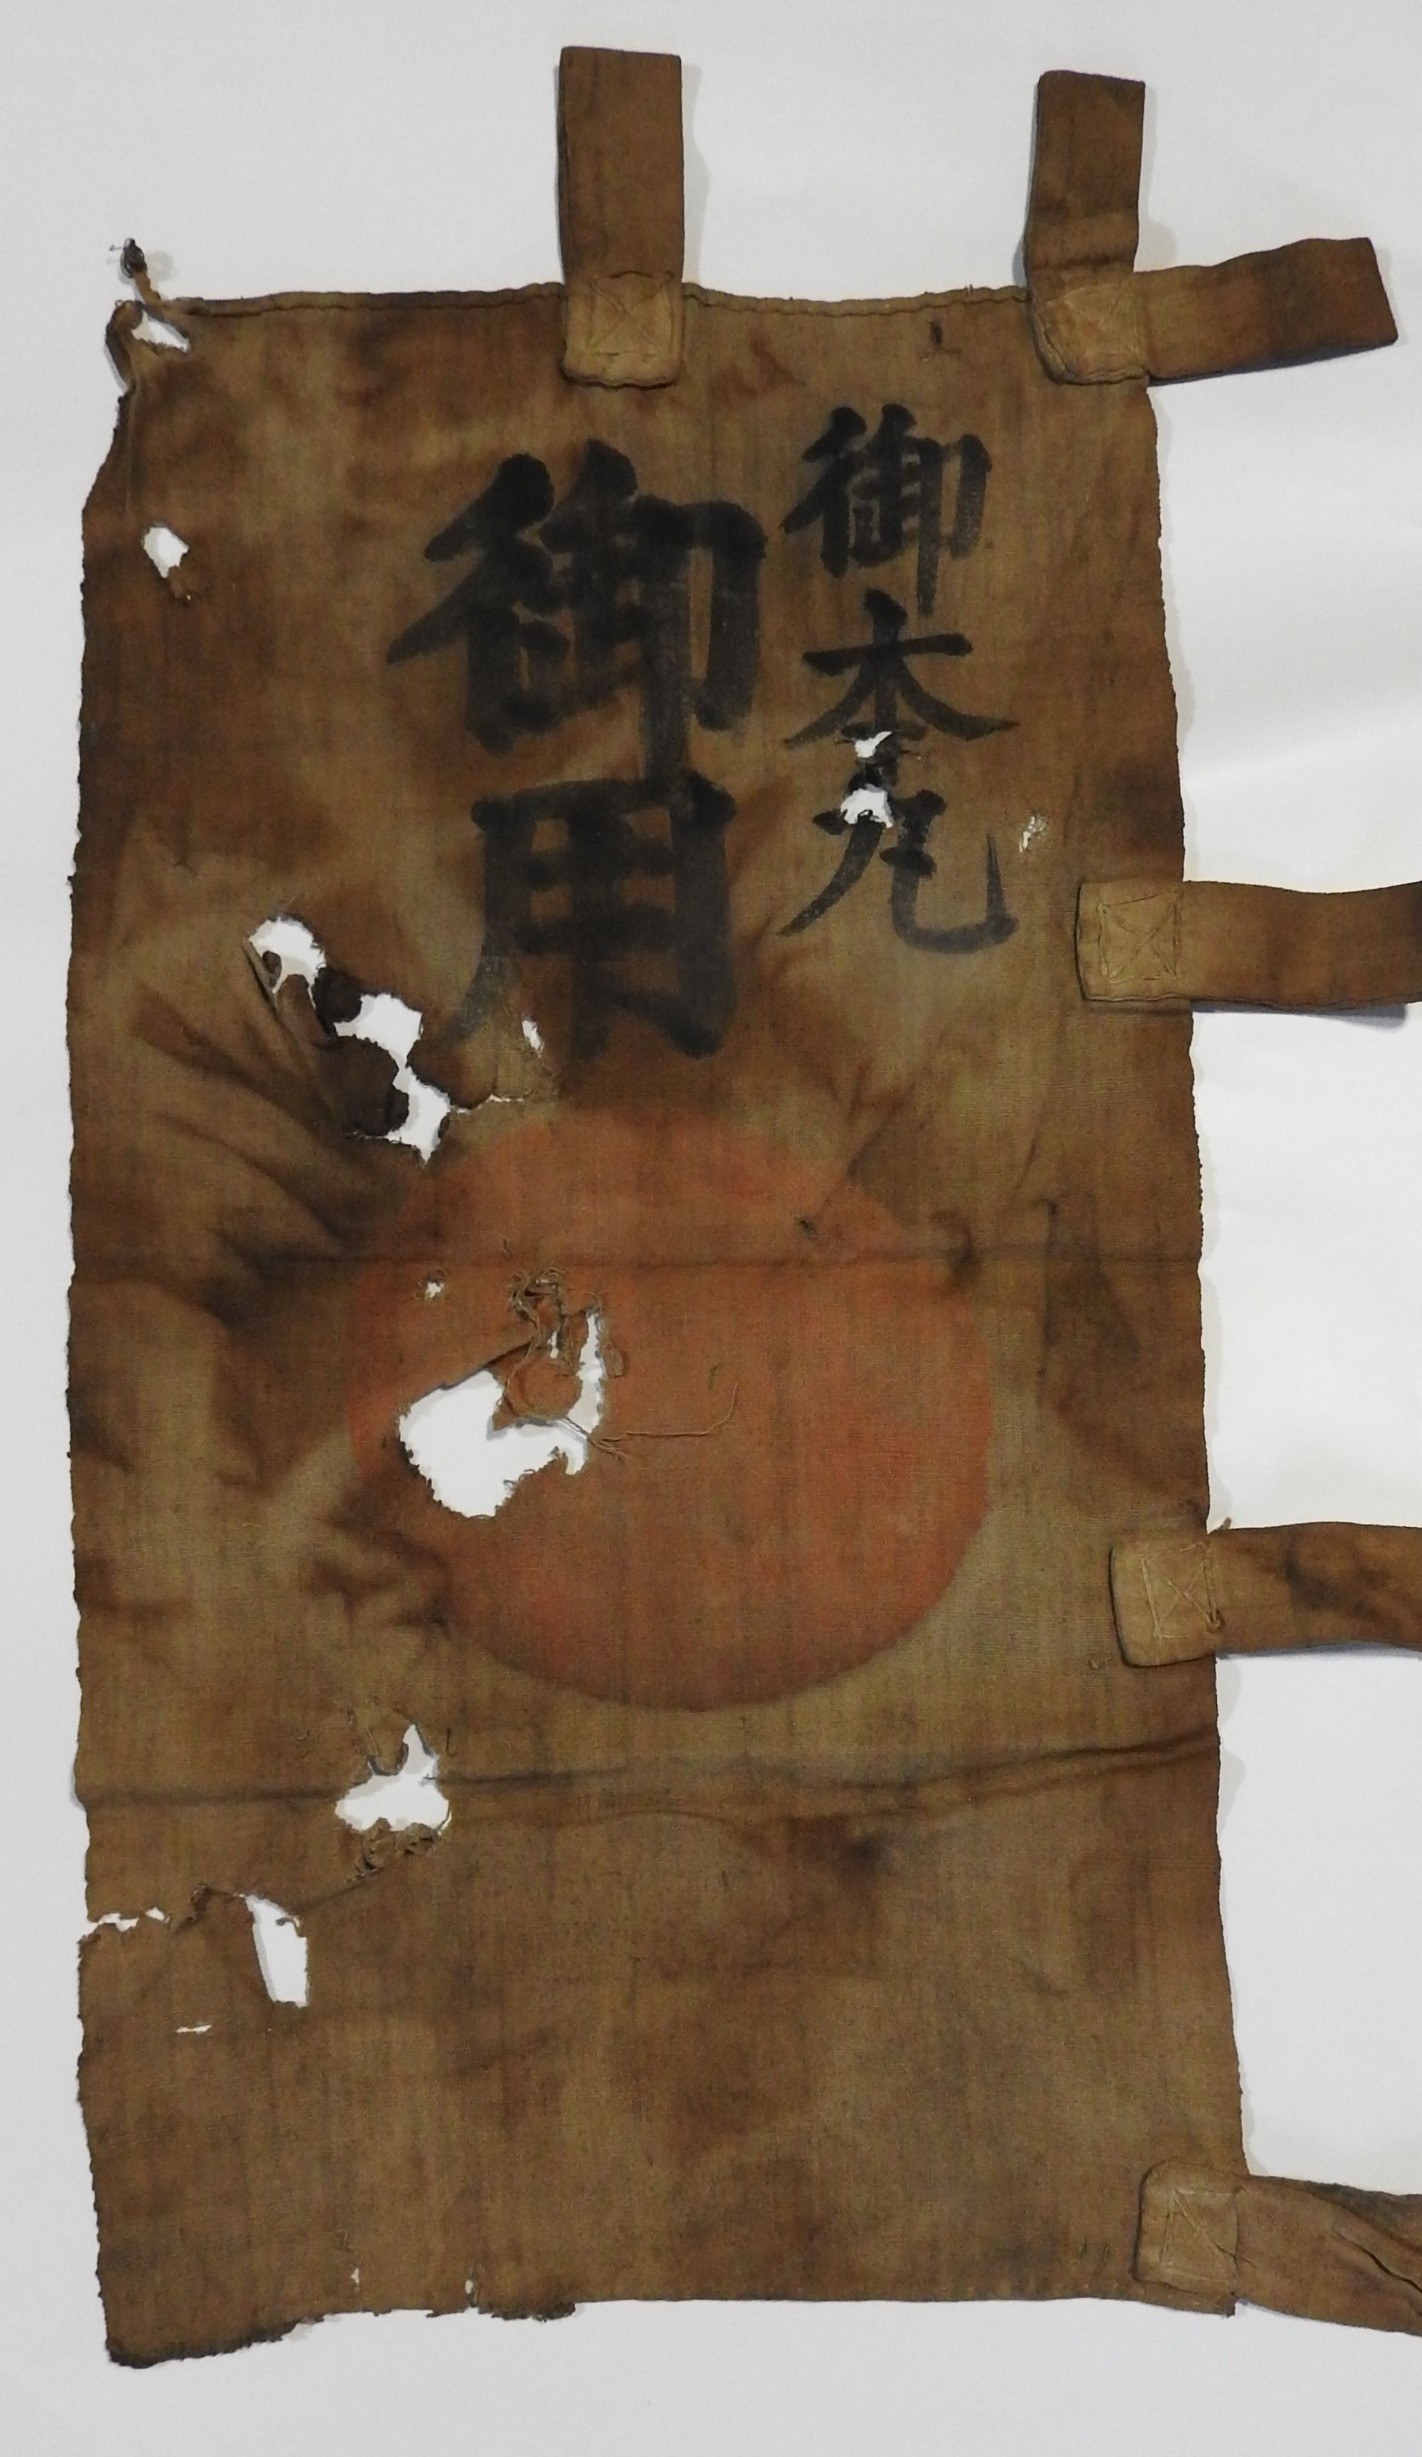 日の丸の上に「御用」「御本丸」と書かれた縦長の旗。江戸城に物資を運ぶ際に掲げられ、他船は水路を開け優先的に運航できたとみられる